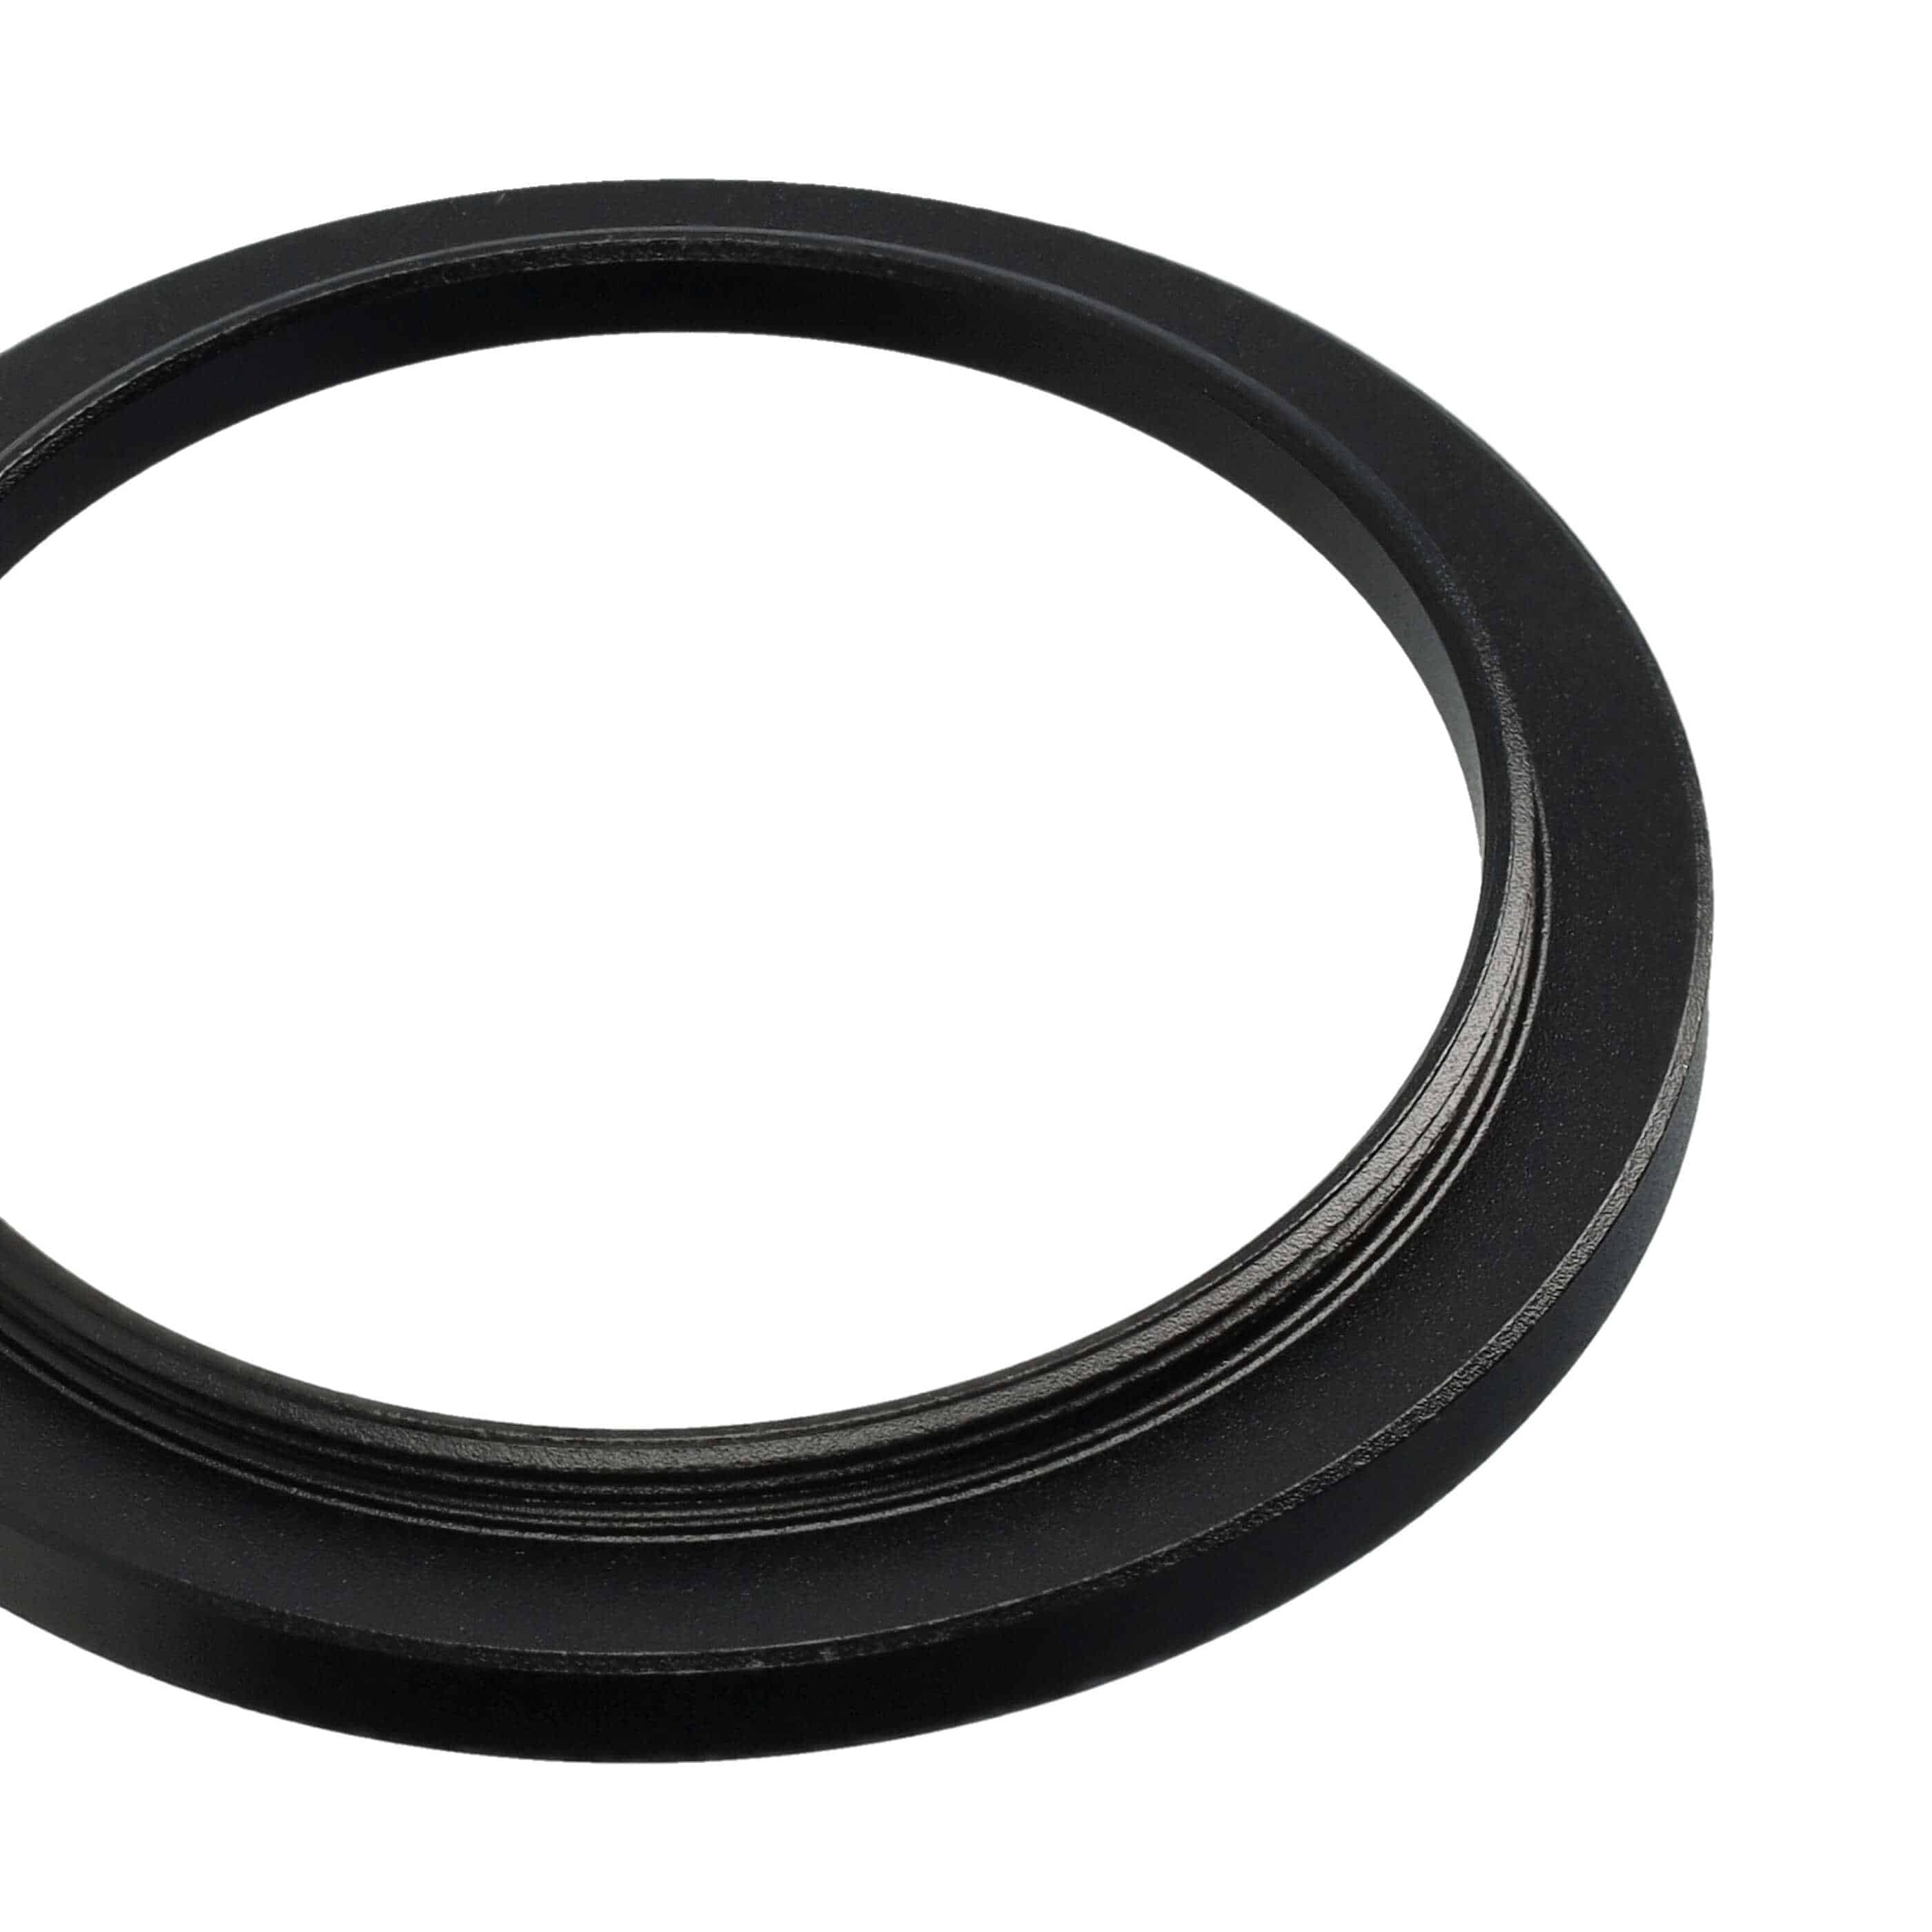 Step-Up-Ring Adapter 43 mm auf 49 mm passend für diverse Kamera-Objektive - Filteradapter